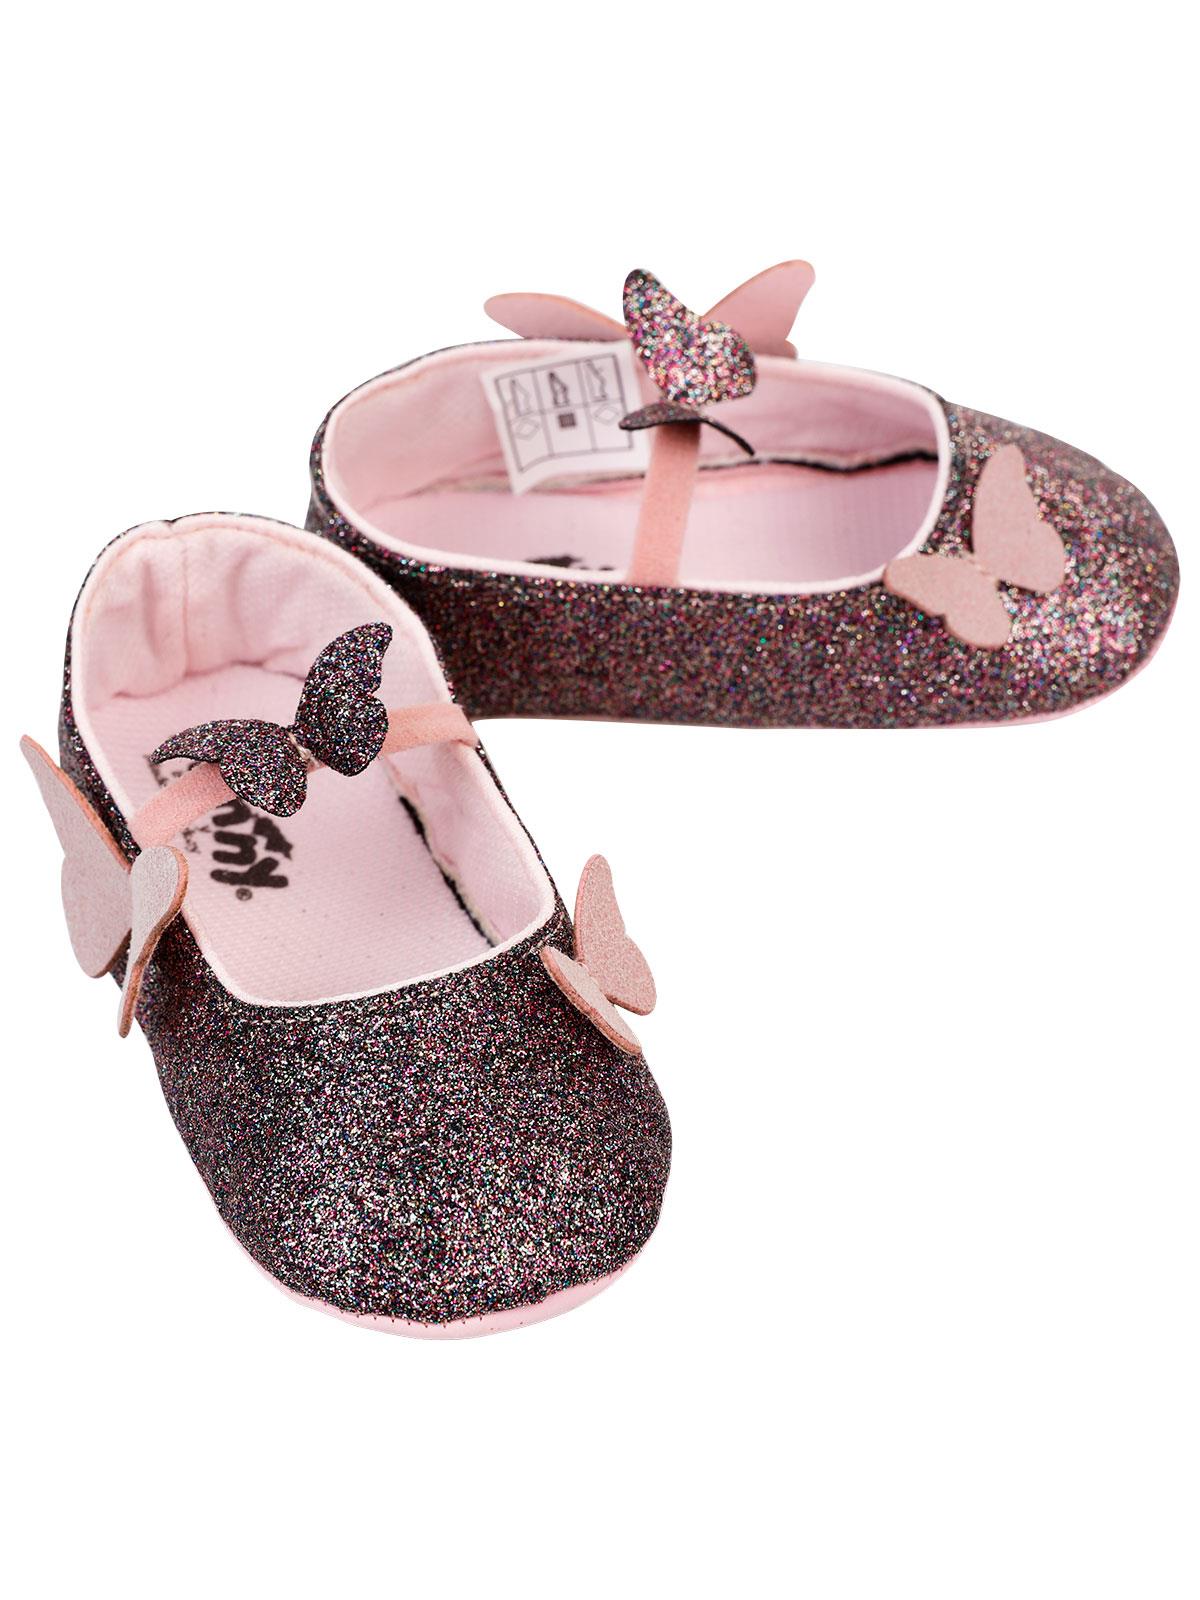 Funny Baby Kız Patik Ayakkabı 17-19 Numara Bordo